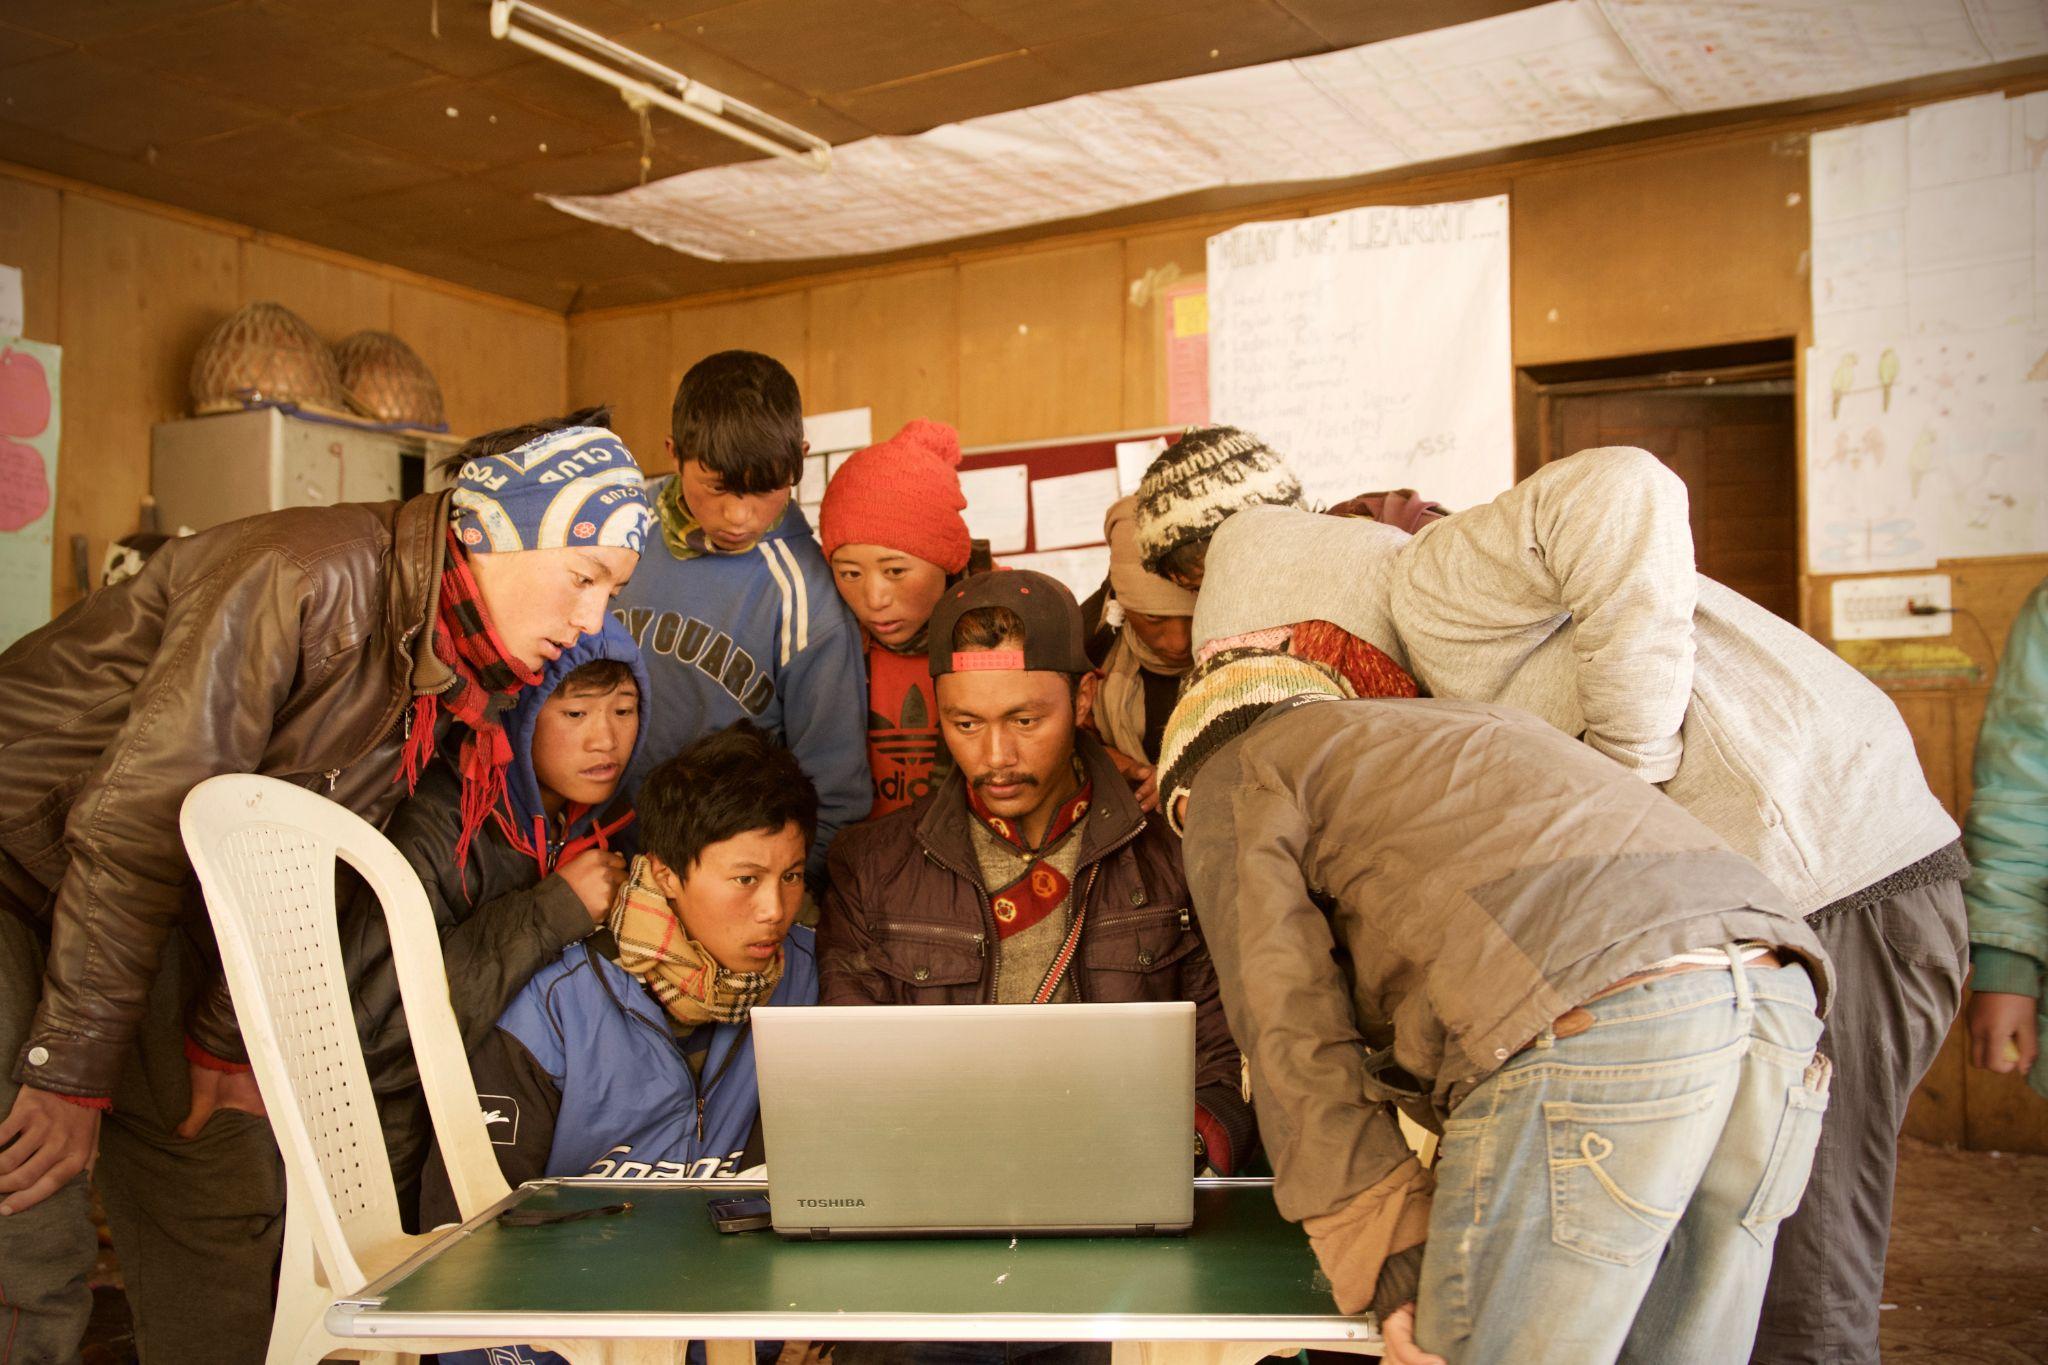 אנשים מתאספים סביב מחשב נייד עומדים על שולחן פשוט עם כיסא פלסטיק משמאל. הרקע נראה כמו בית ספר במדינה מתפתחת.